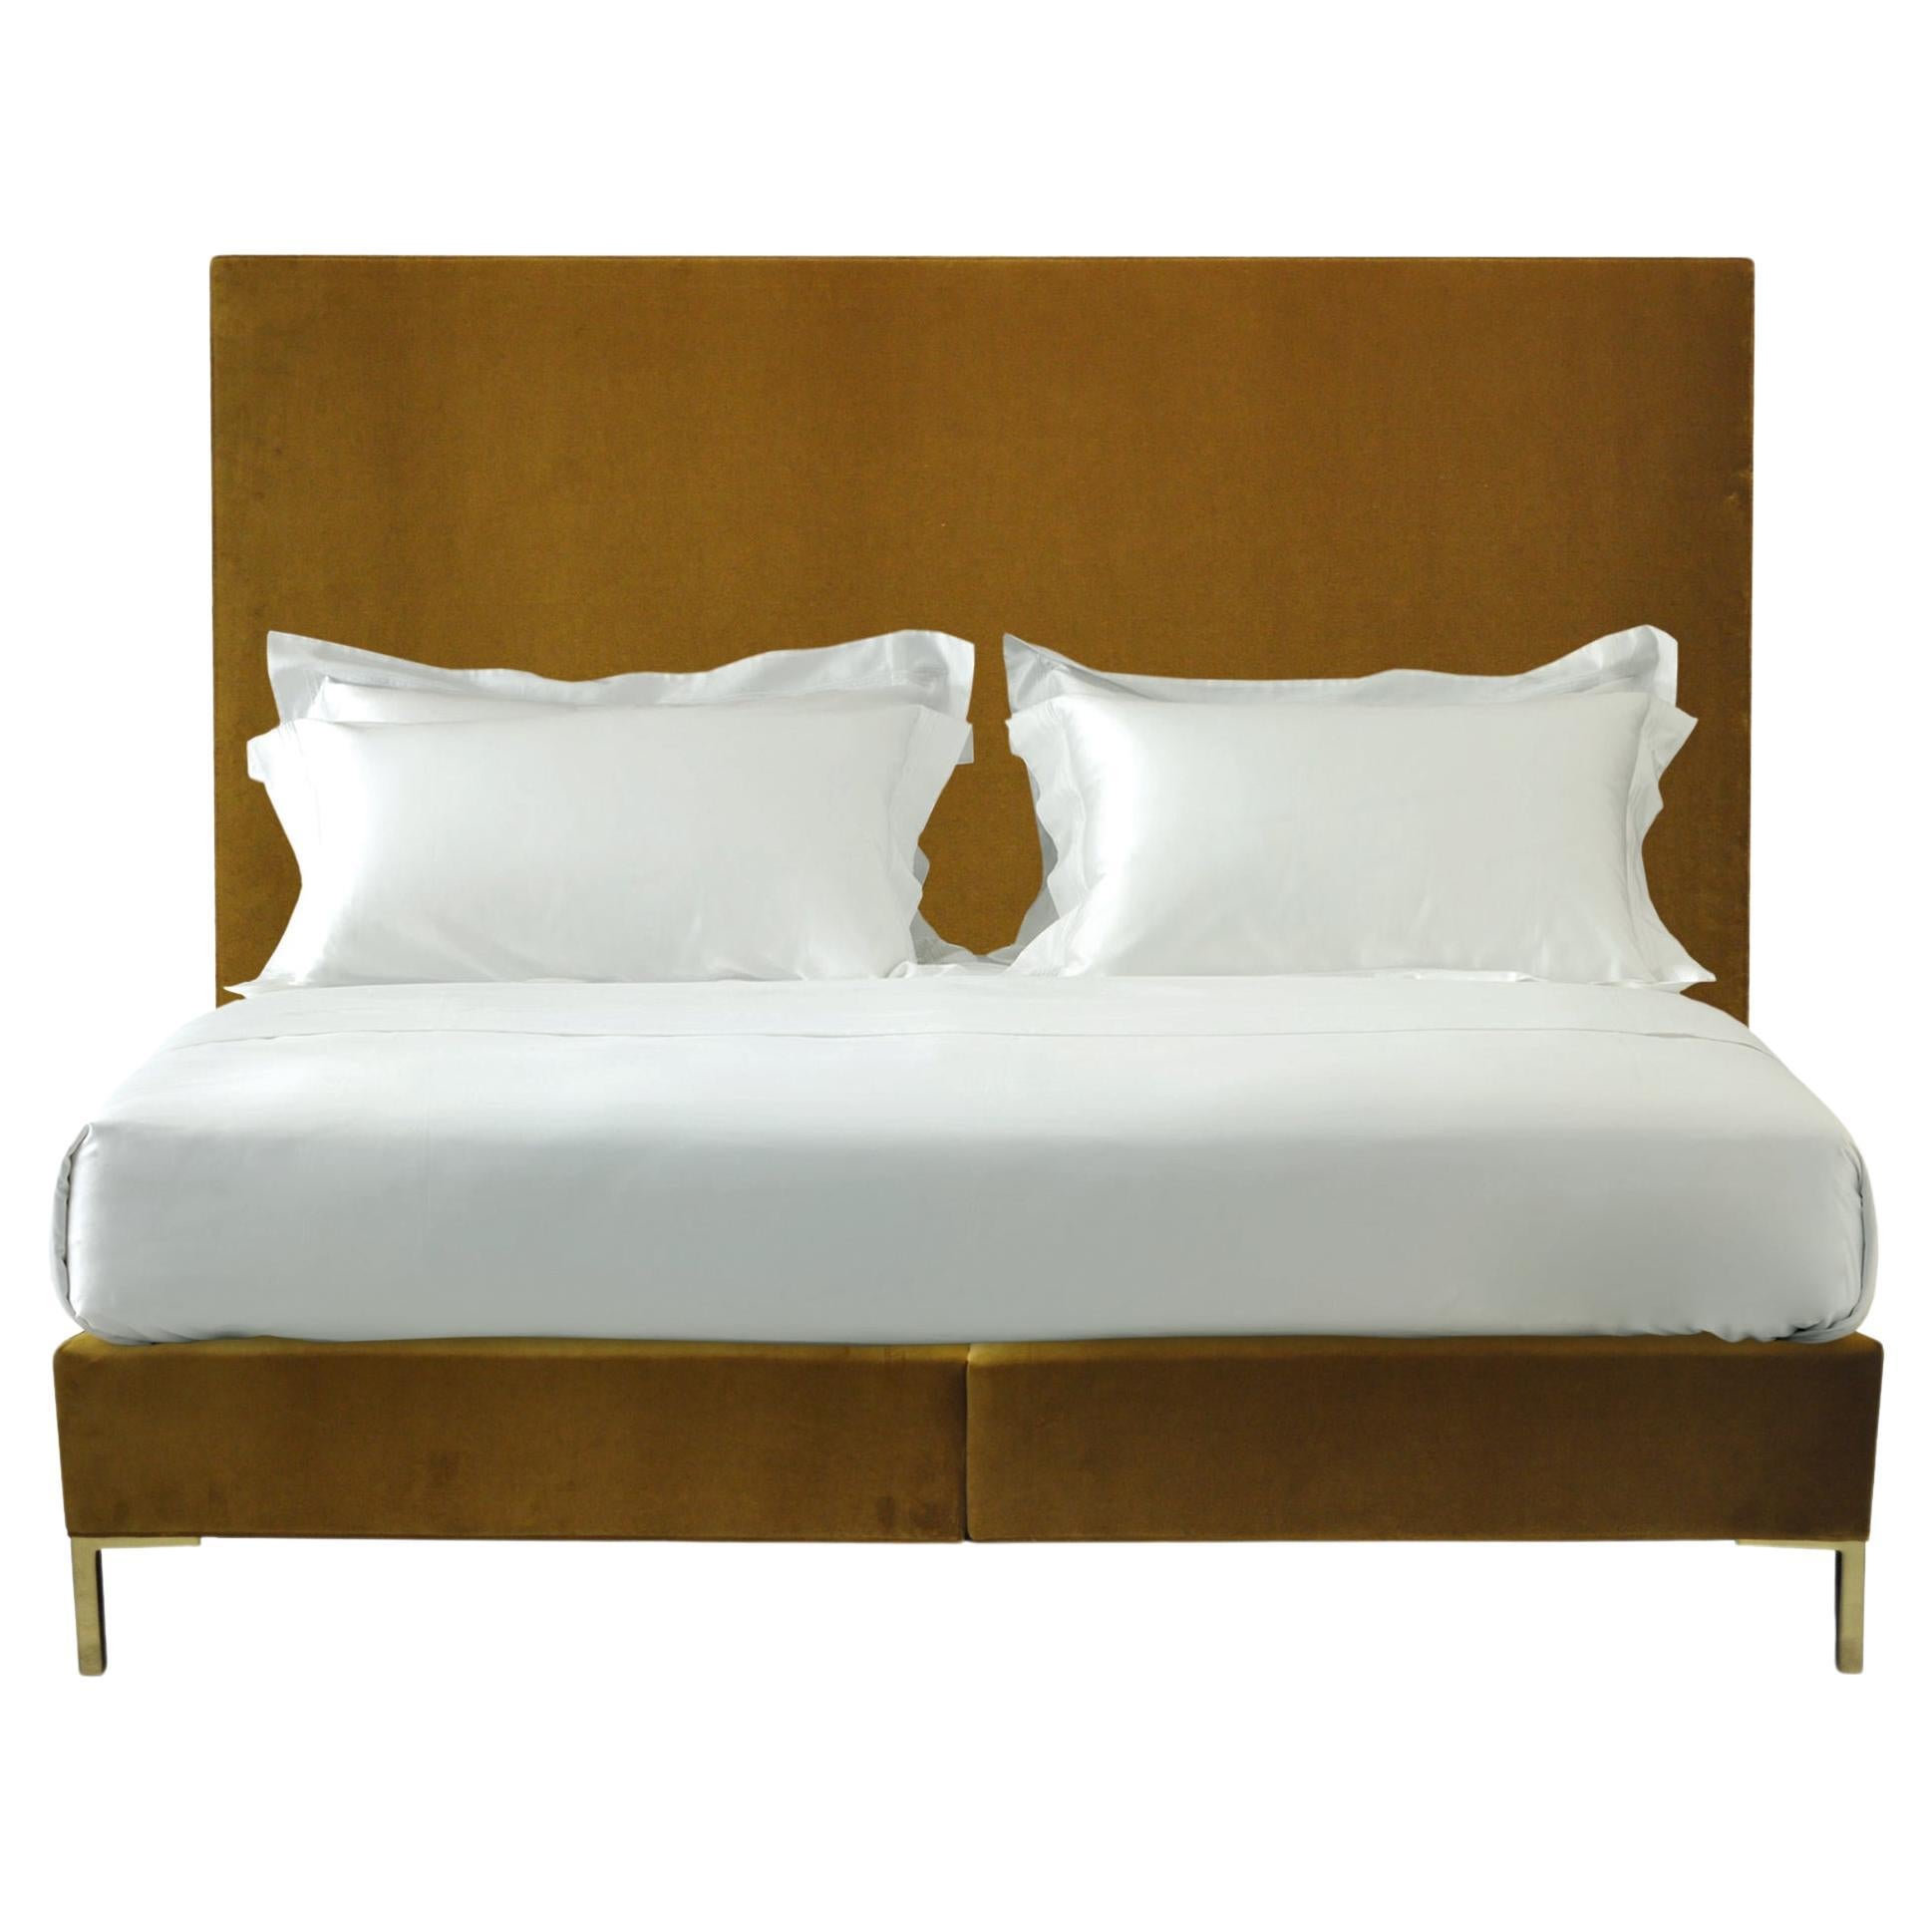 Tête de lit et ensemble de lit Savoir Harlech et N3 fabriqués à la main, sur mesure, taille King Size